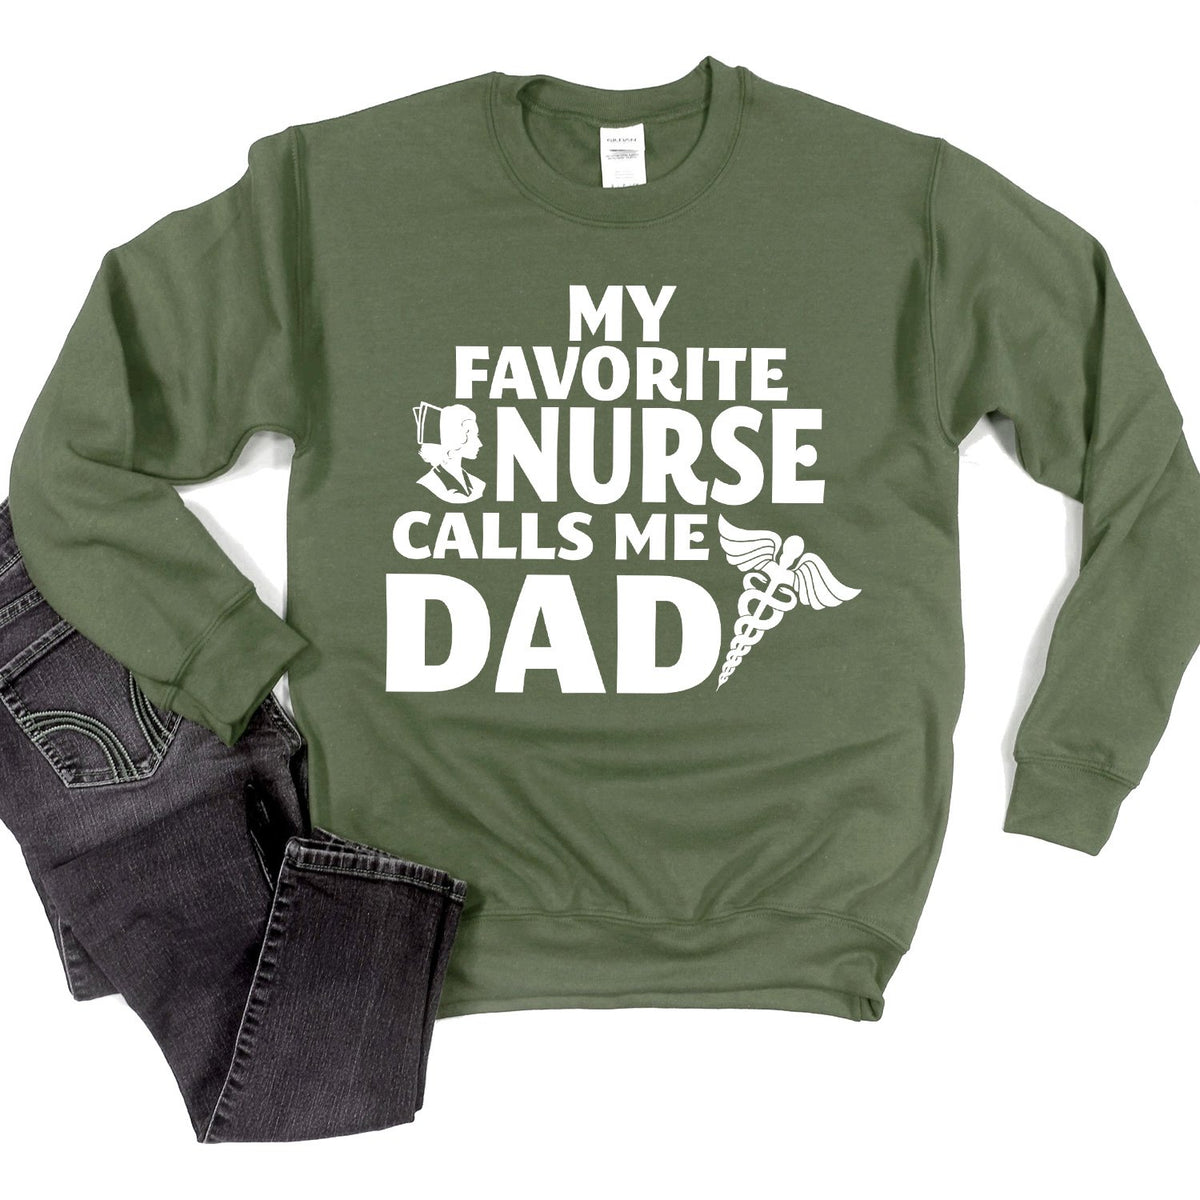 My Favorite Nurse Calls Me Dad - Long Sleeve Heavy Crewneck Sweatshirt